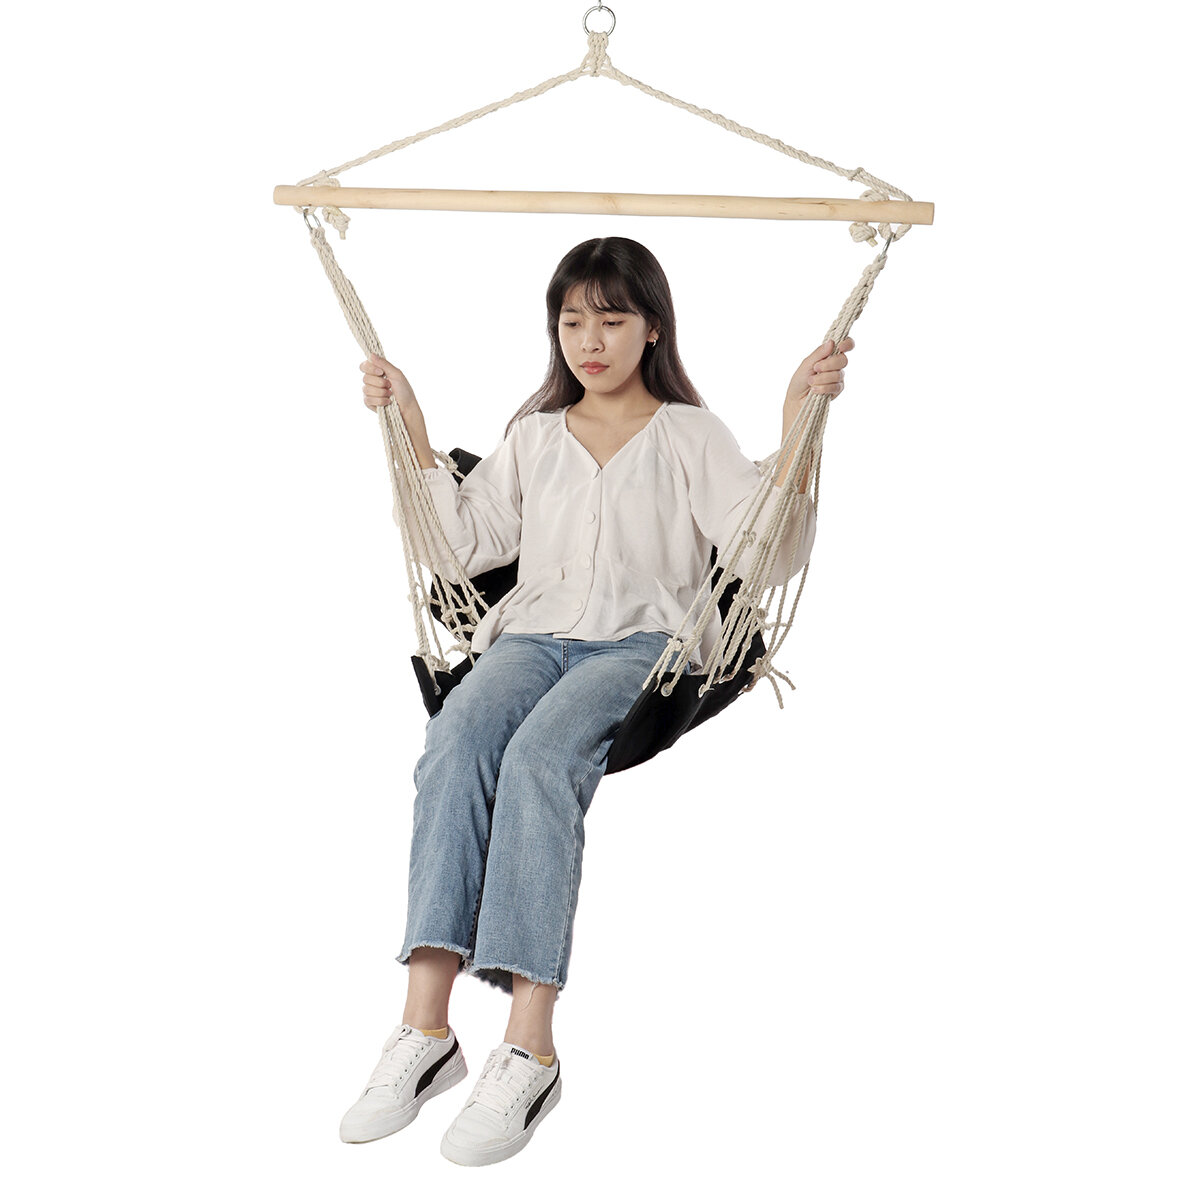 Cadeira de rede de algodão de 100 * 50 cm com carga máxima de 160 kg, confortável e simples, ideal para balançar no jardim ao ar livre.